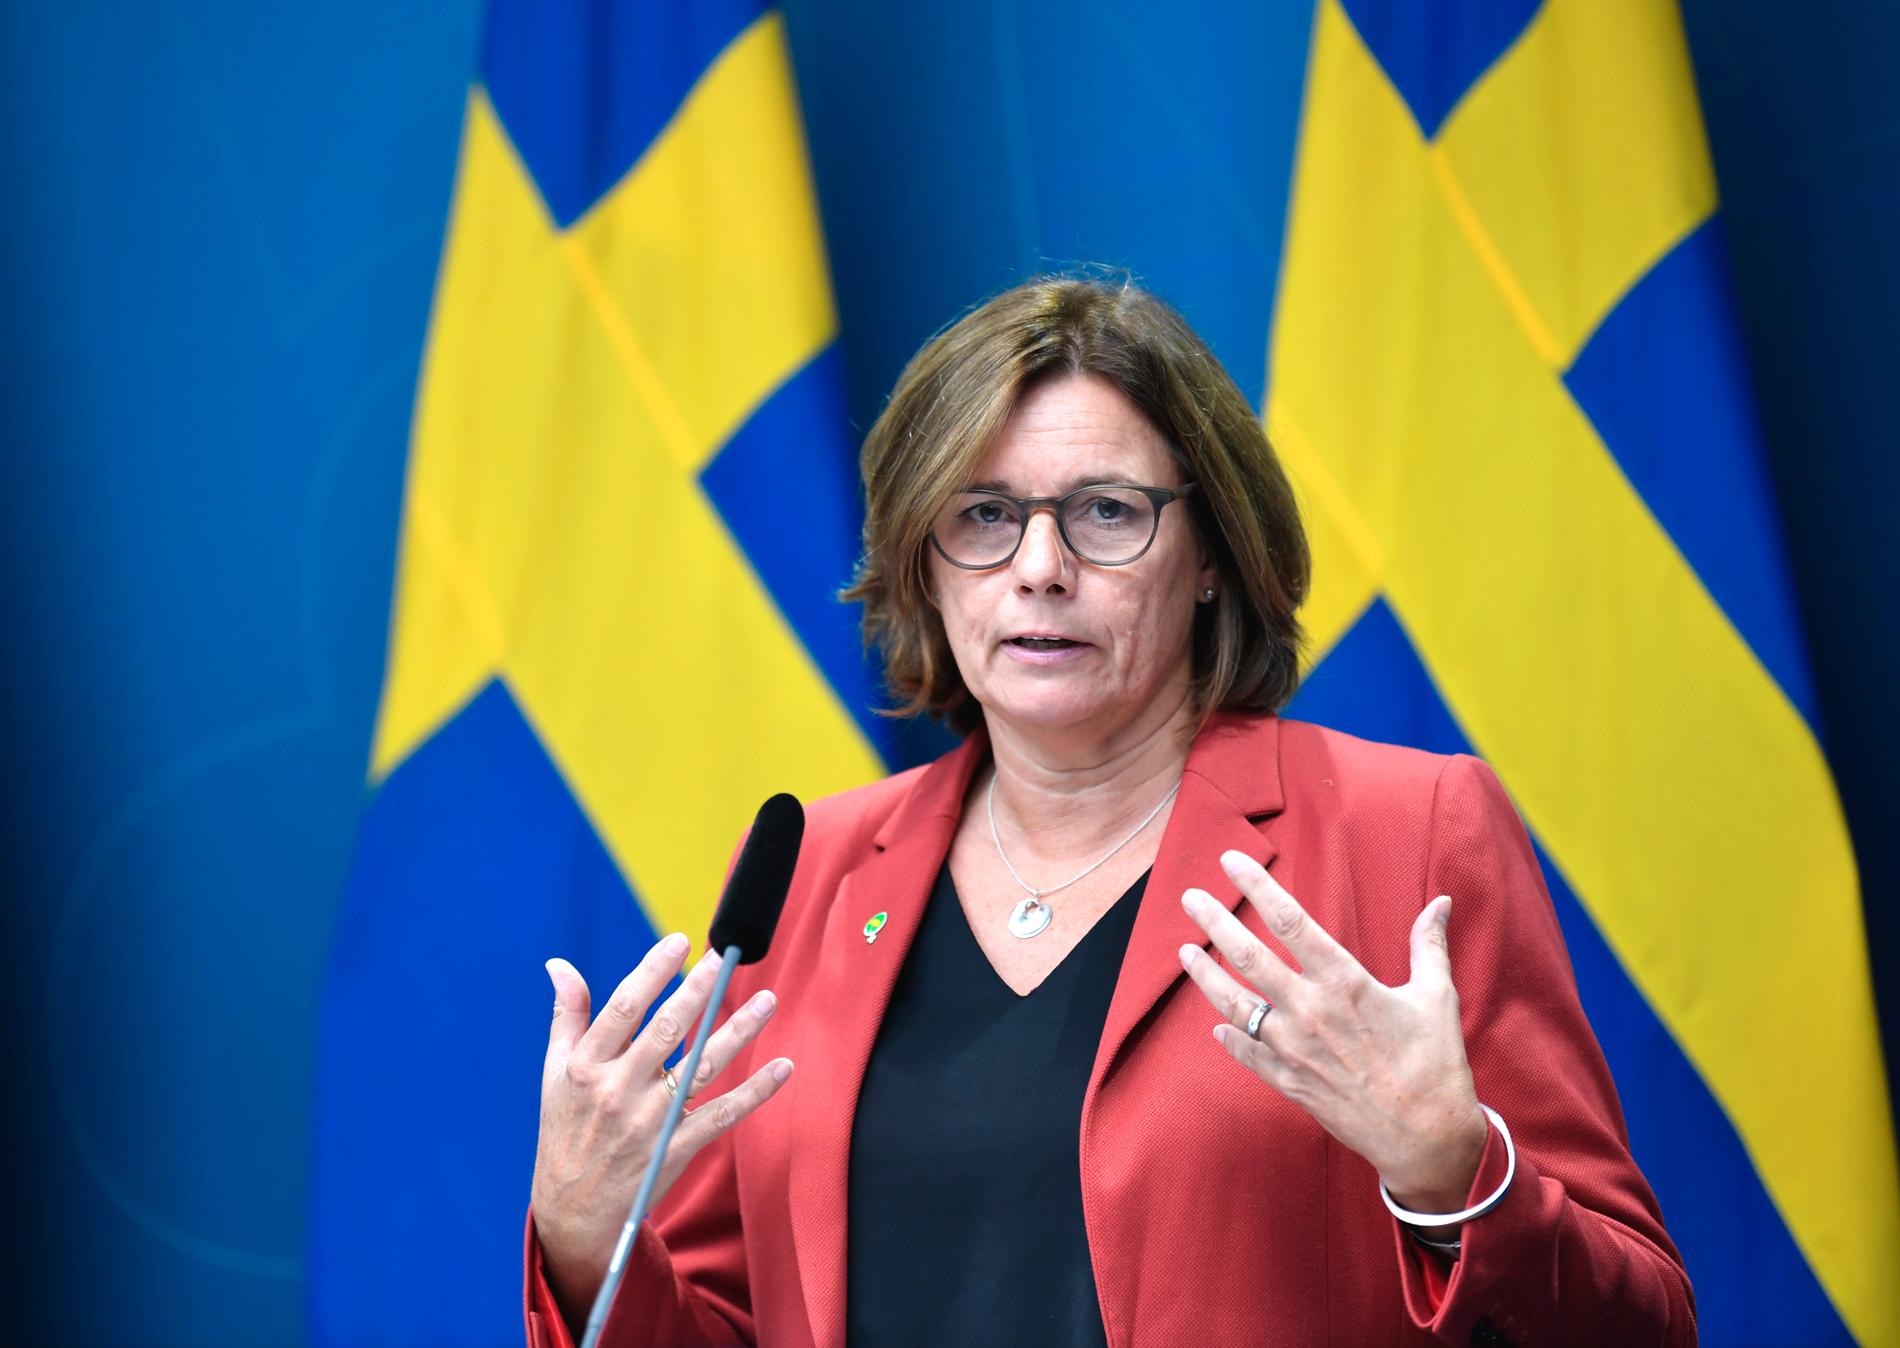 Miljö- och klimatminister Isabella Lövin presenterade i början av september nya budgetåtgärder på klimat- och miljöområdet. Preem tycks ha fått information om satsningarna på förhand.